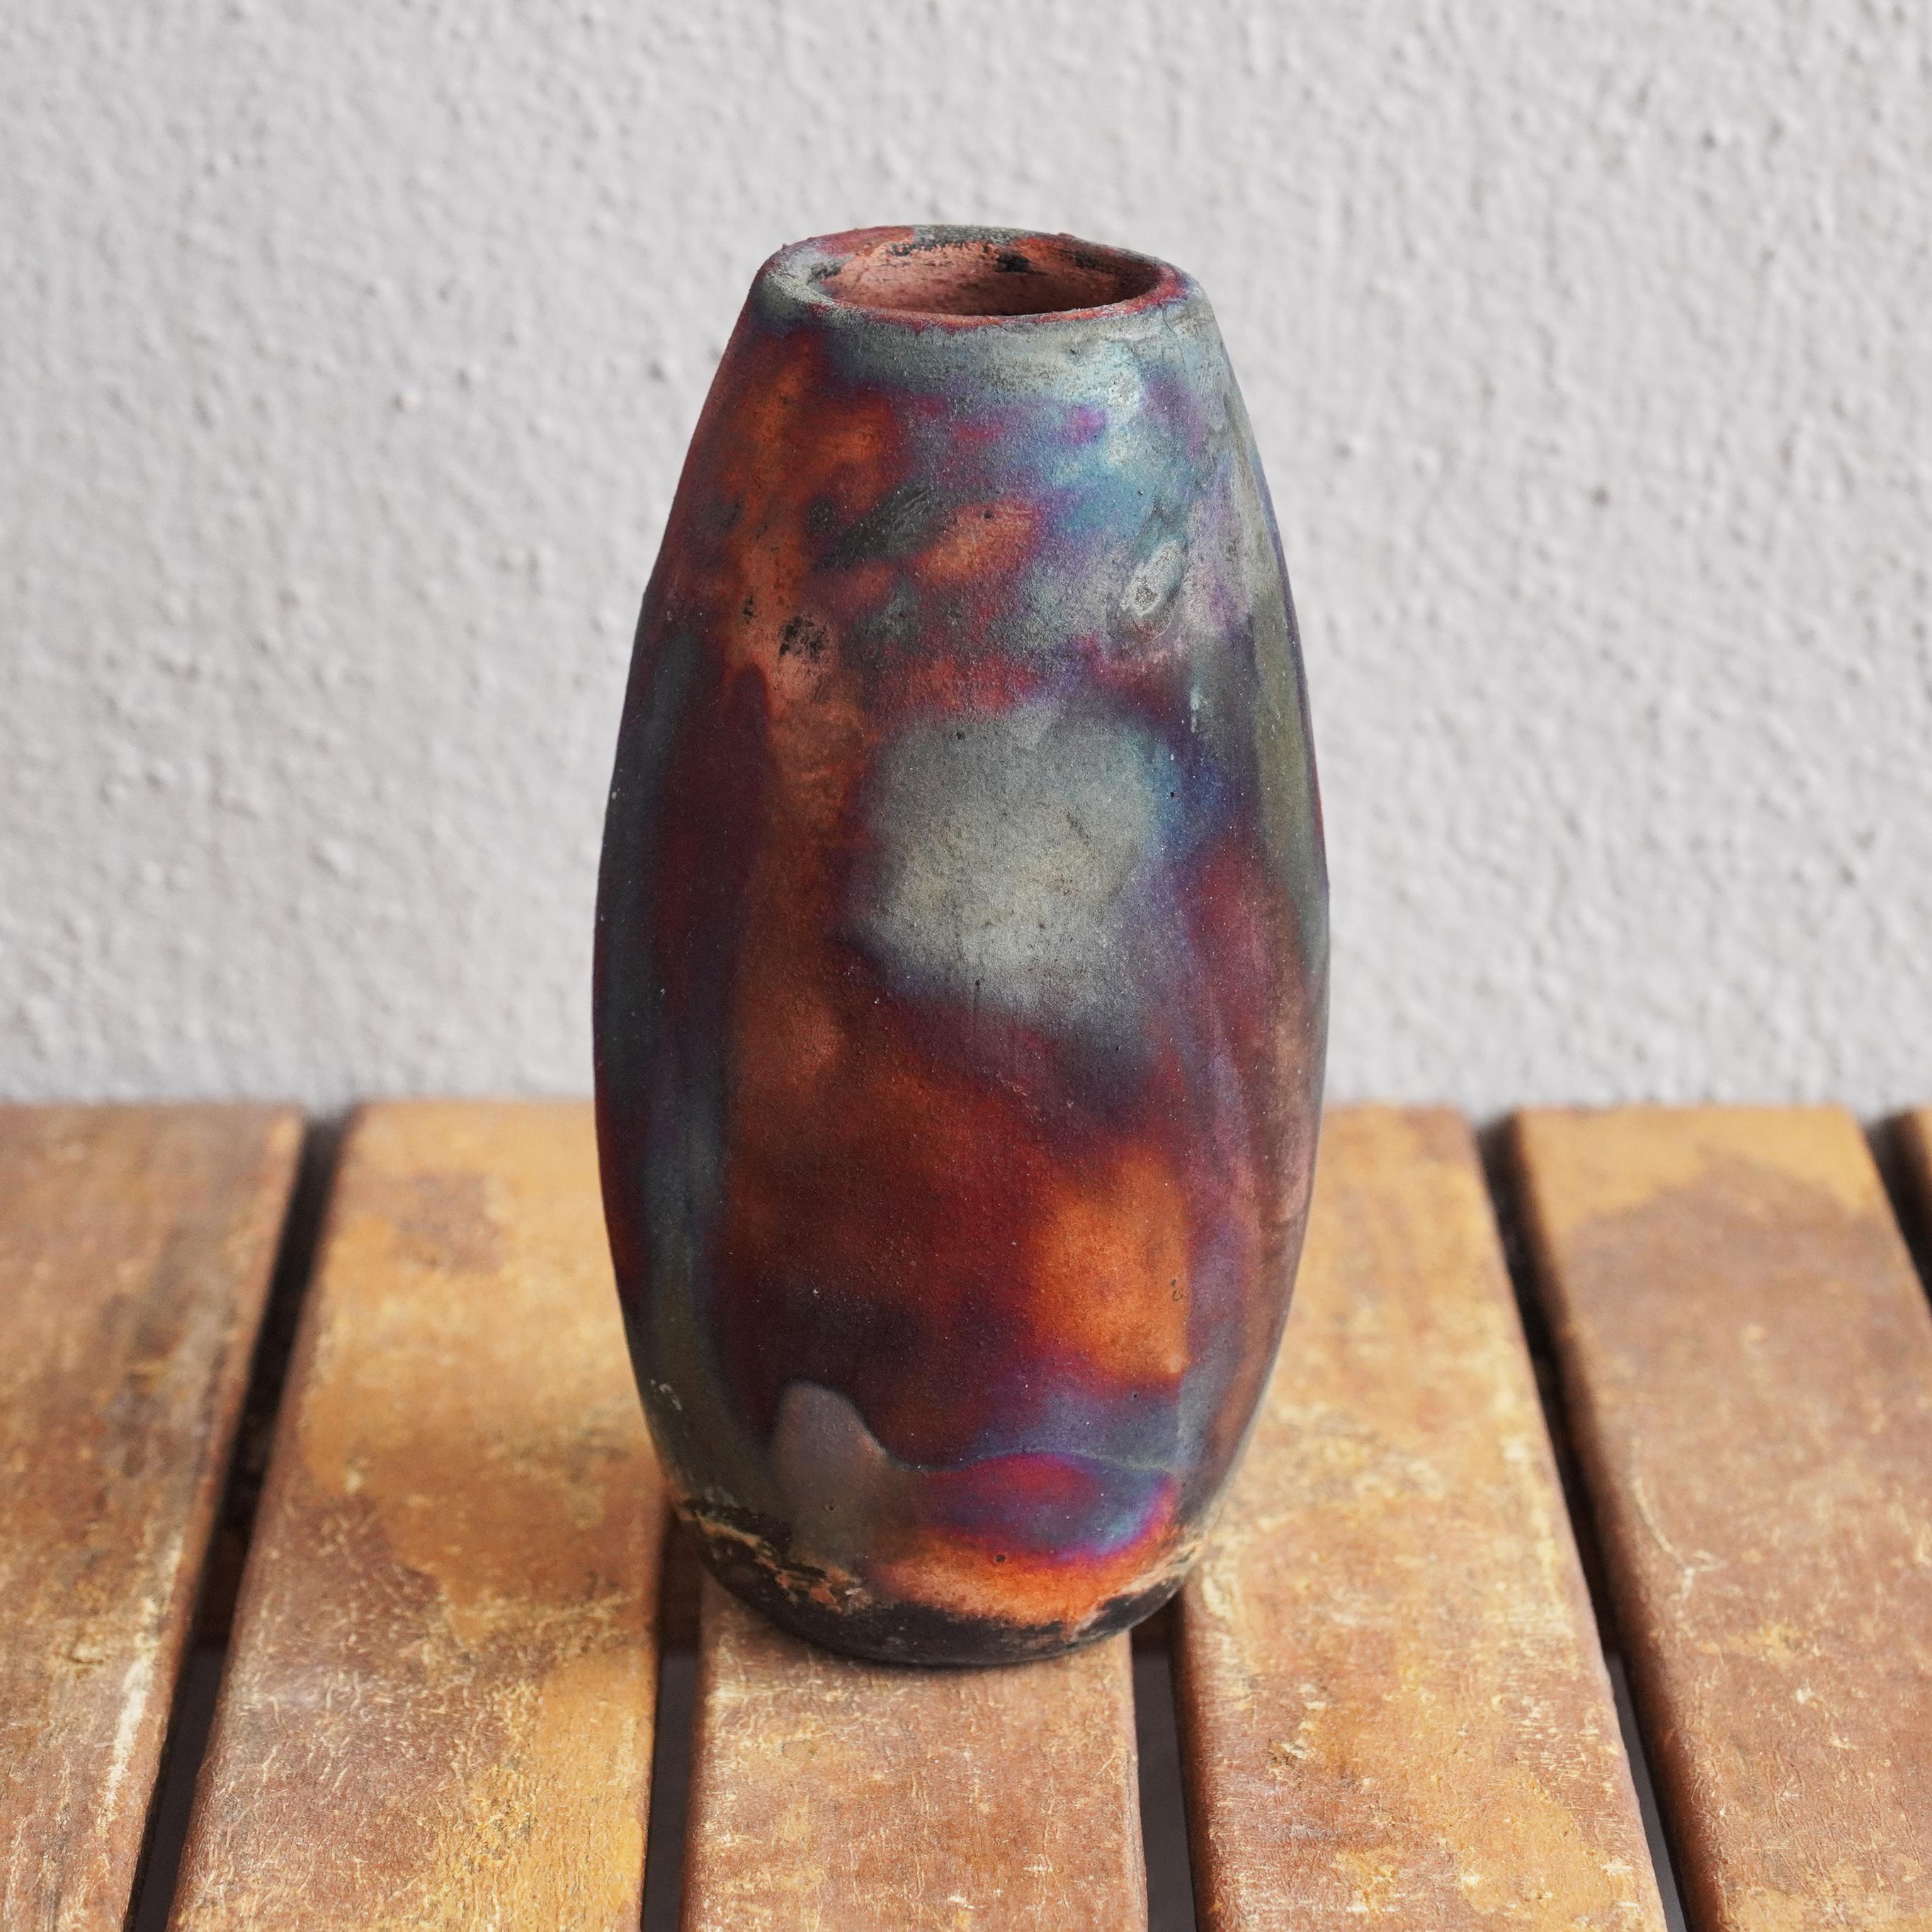 Tsuri ( ツリー ) ~  (n) Baum

Unsere Tsuri-Vase ist der klassischen Flaschenform nachempfunden, hat aber oben eine breitere Öffnung. In Kombination mit anderen RAAQUU BASICS Vasen würde sie bestimmt toll aussehen.

Sie können Ihren Raum mit der